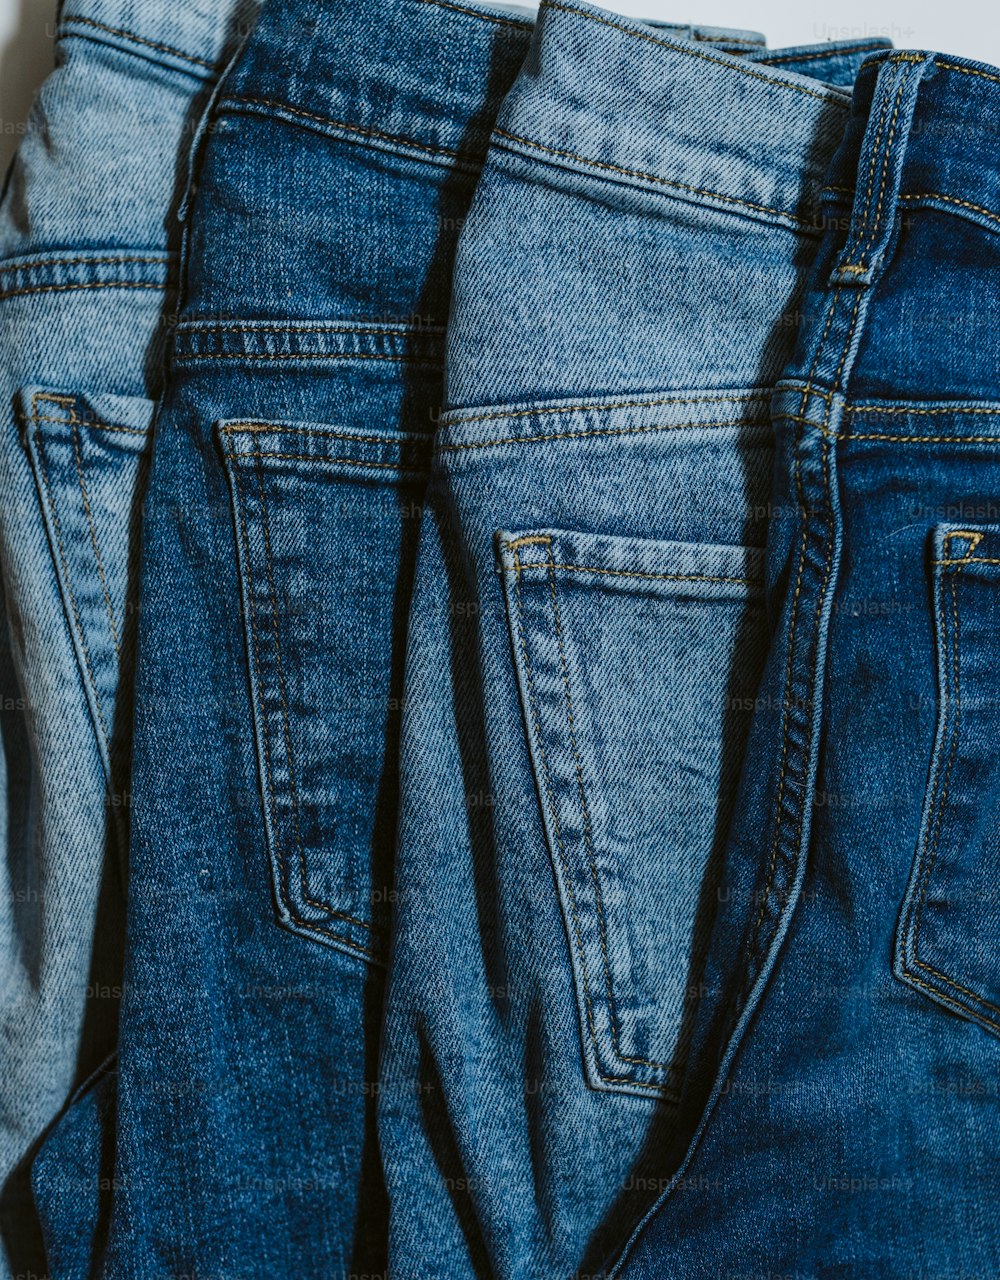 Tre paia di jeans sono allineati su una superficie bianca